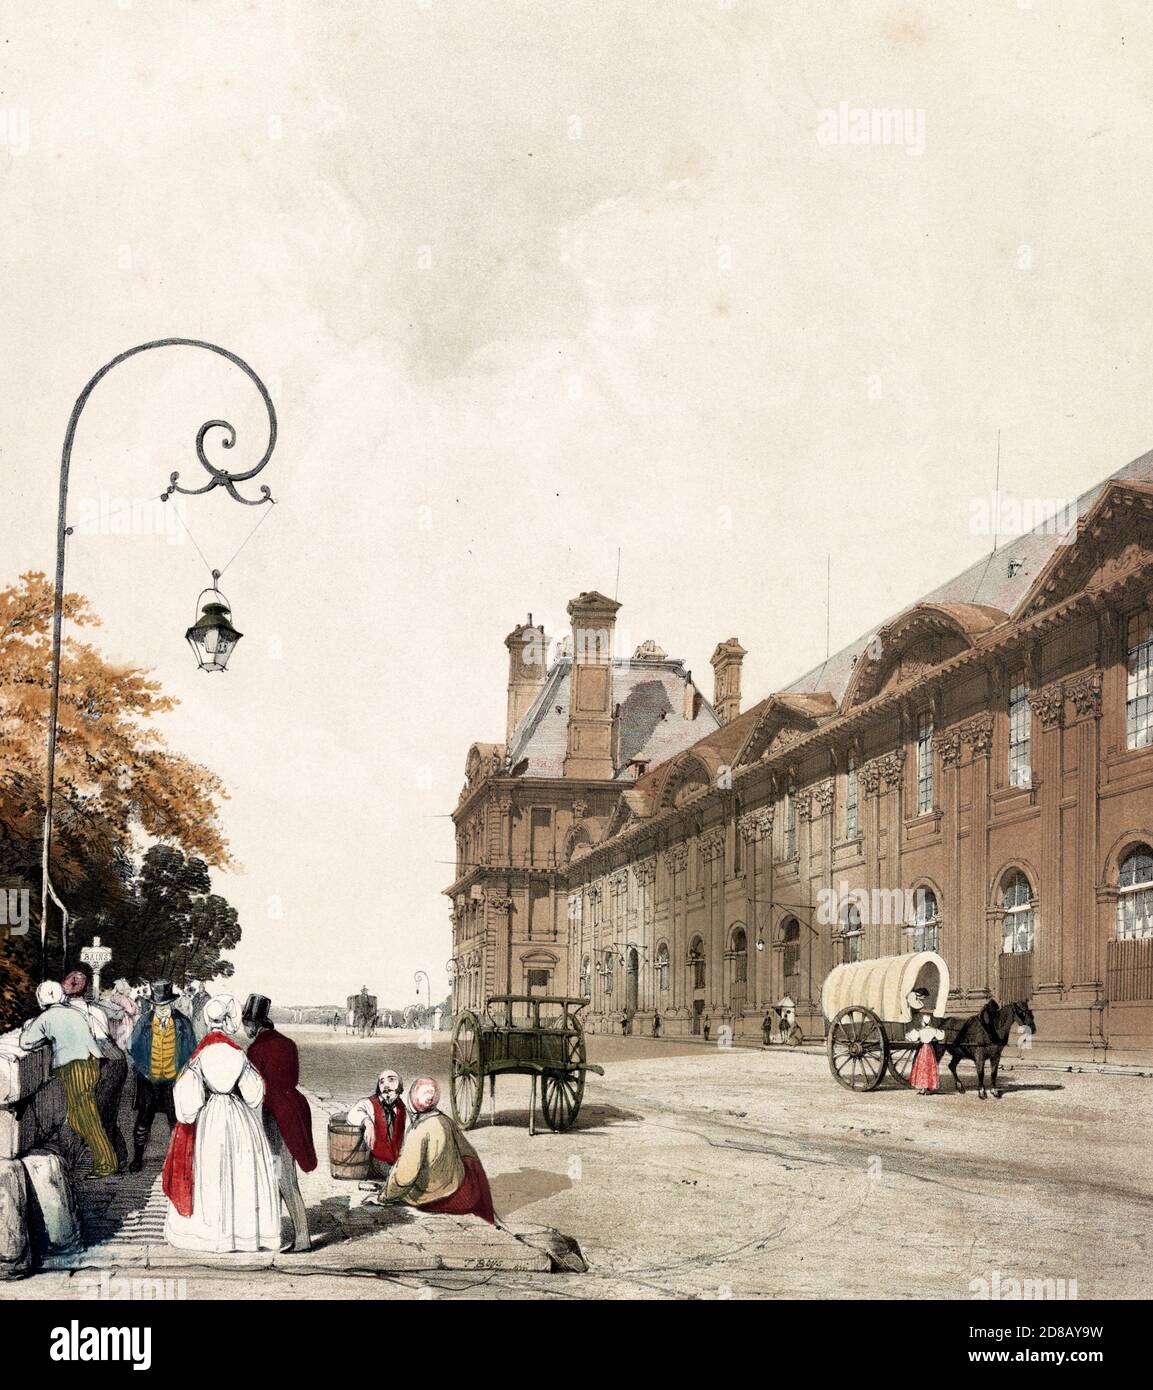 Pavillon de Flore, Tuileries - Stampa mostra una scena di strada a Parigi, Francia, tra il fiume Senna (a sinistra) e il palazzo reale Tuileries, 1839 Foto Stock